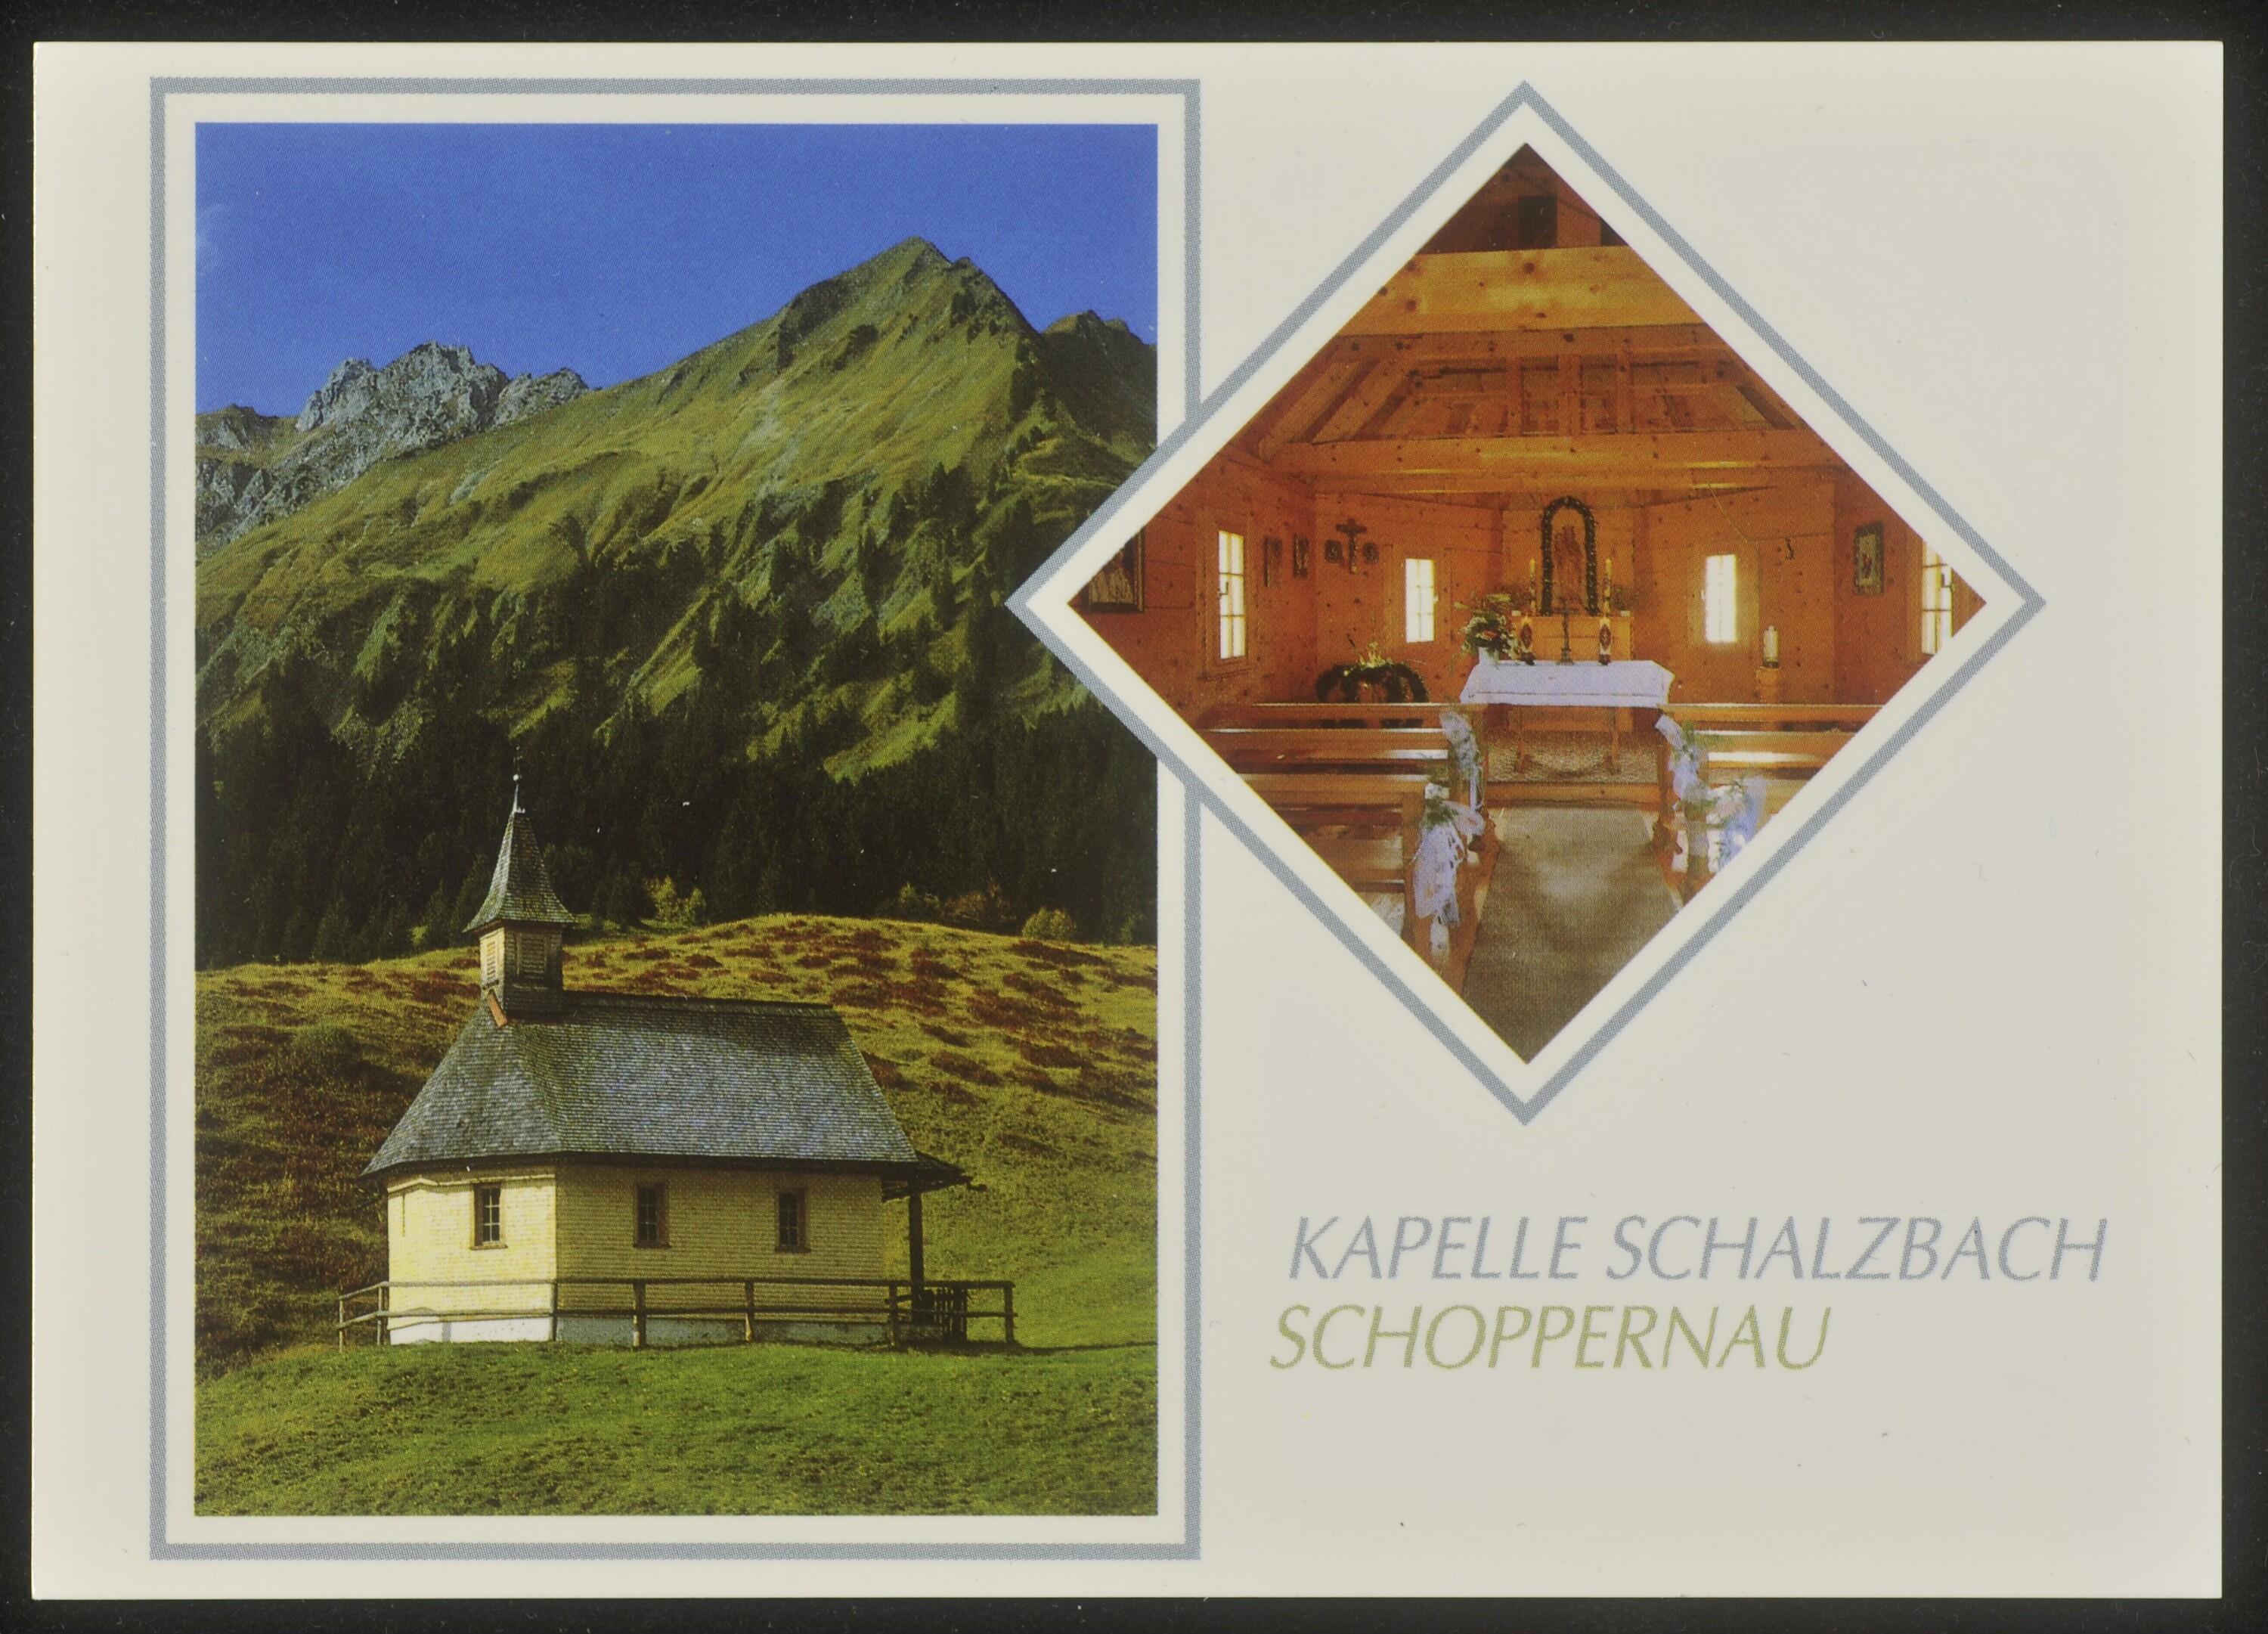 Kapelle Schalzbach Schoppernau></div>


    <hr>
    <div class=